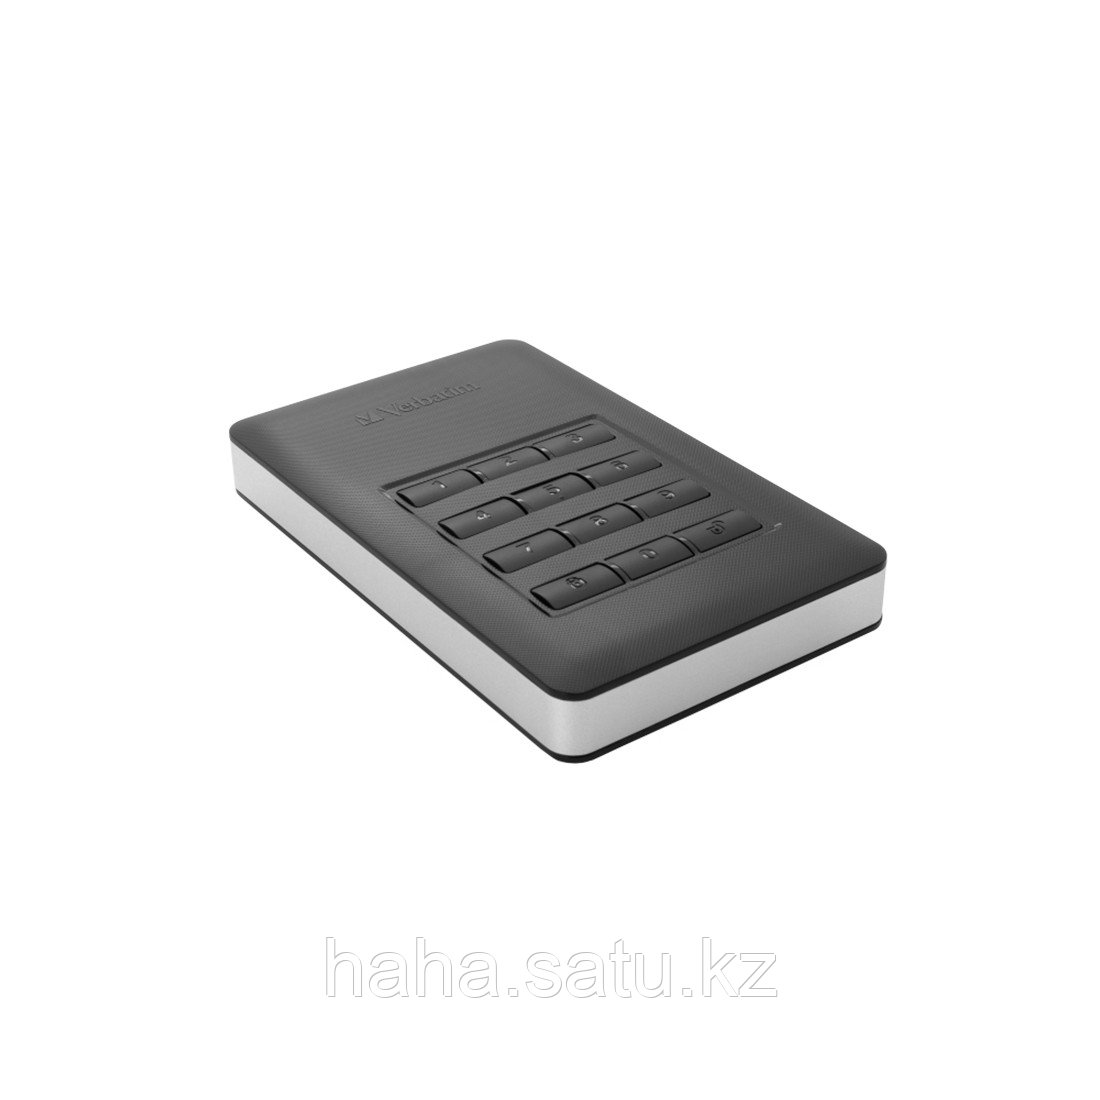 Внешний жёсткий диск Verbatim 53401 1TB 2.5" Чёрный в Алматы, внутренние и  внешние жесткие диски, HDD, SSD | "Магазин LUCKYSHOP.KZ (Лакишоп.кз)" -  91891257